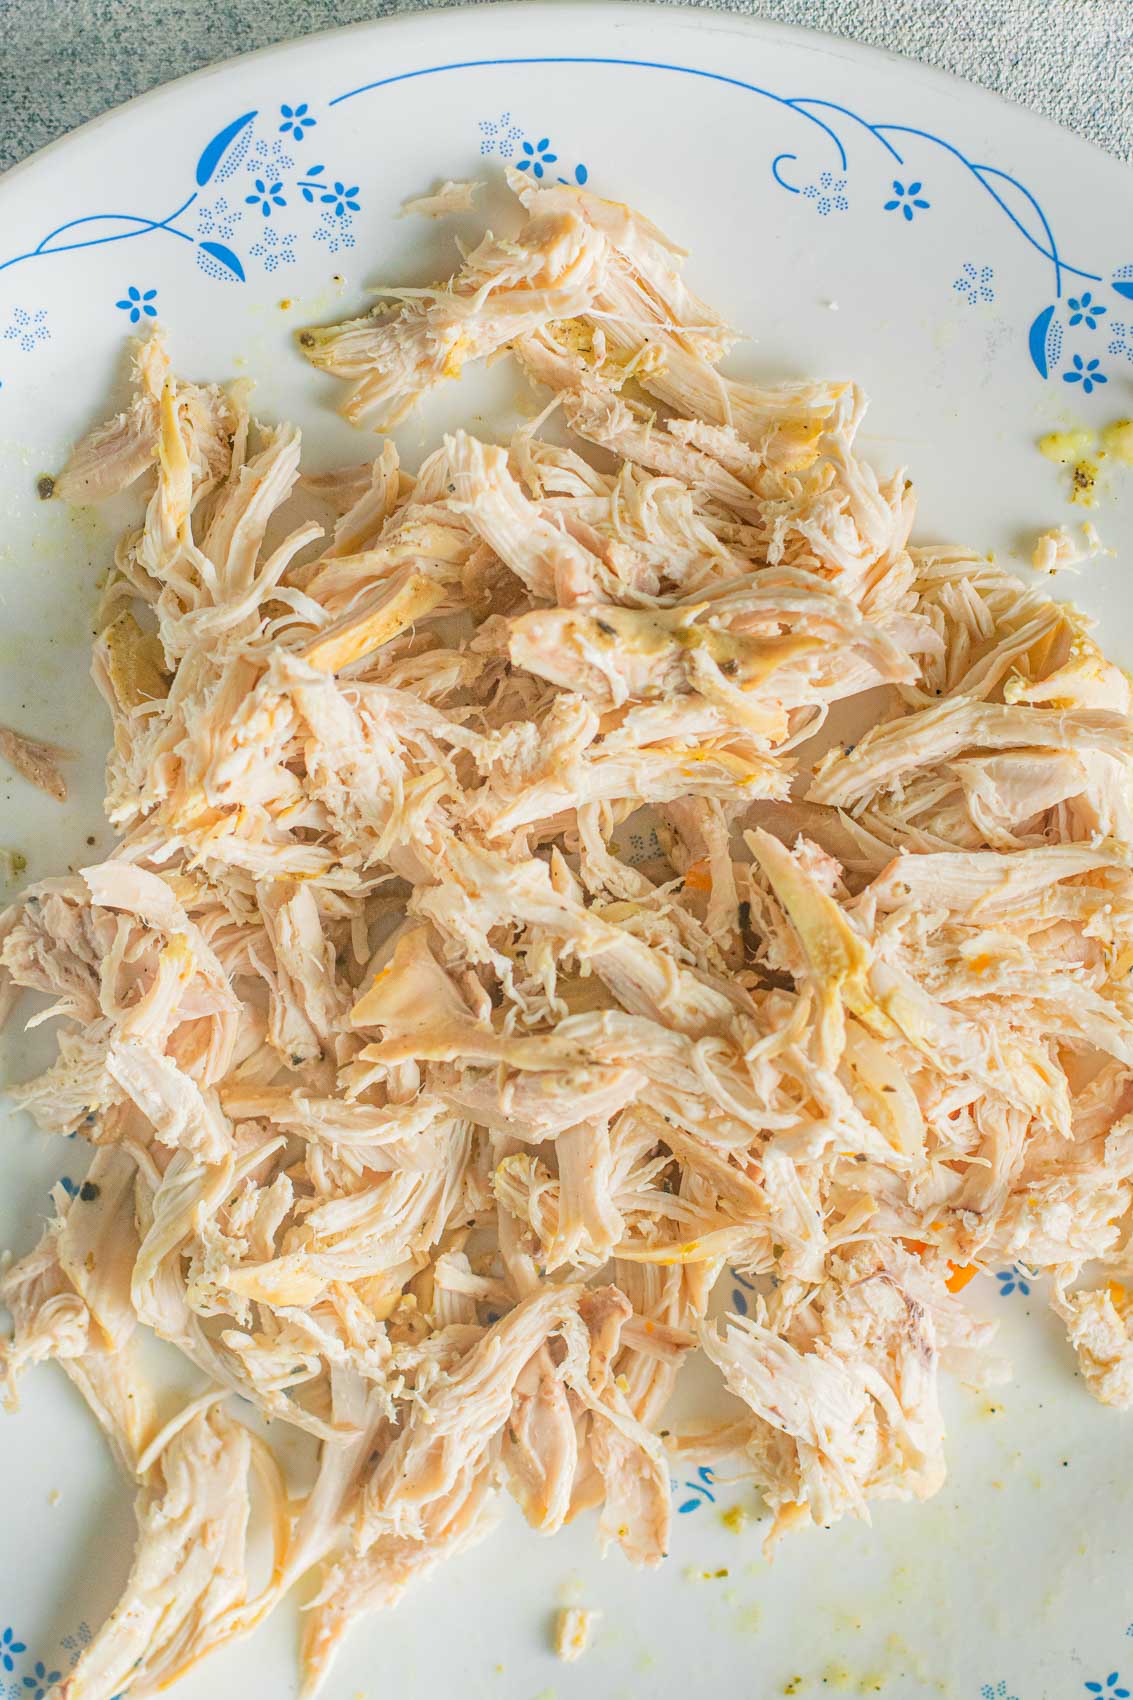 shredded chicken breasts